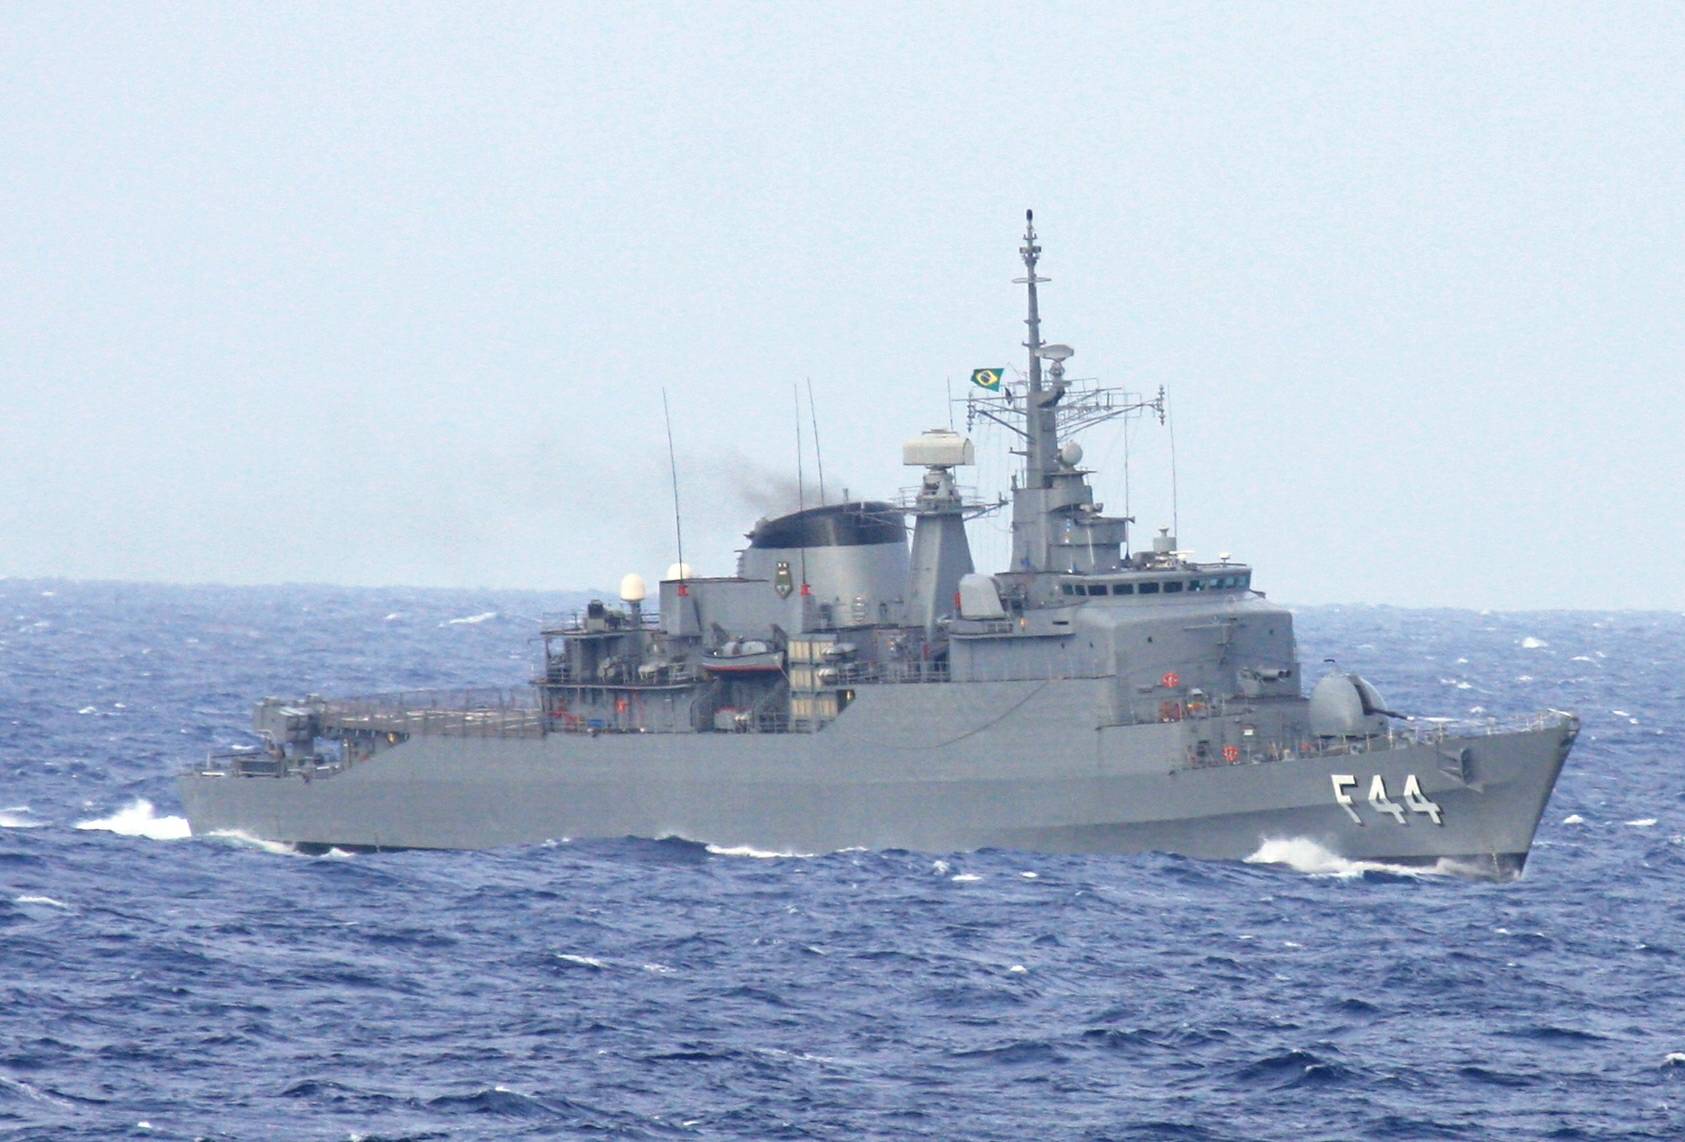 A Independência operando com a Esquadra em 17 de novembro de 2009, fotografada de um navio mercante estrangeiros na costa sul do Brasil. (foto: Captain Ted - Shipspotting, via Gustavo Castro de Sousa)